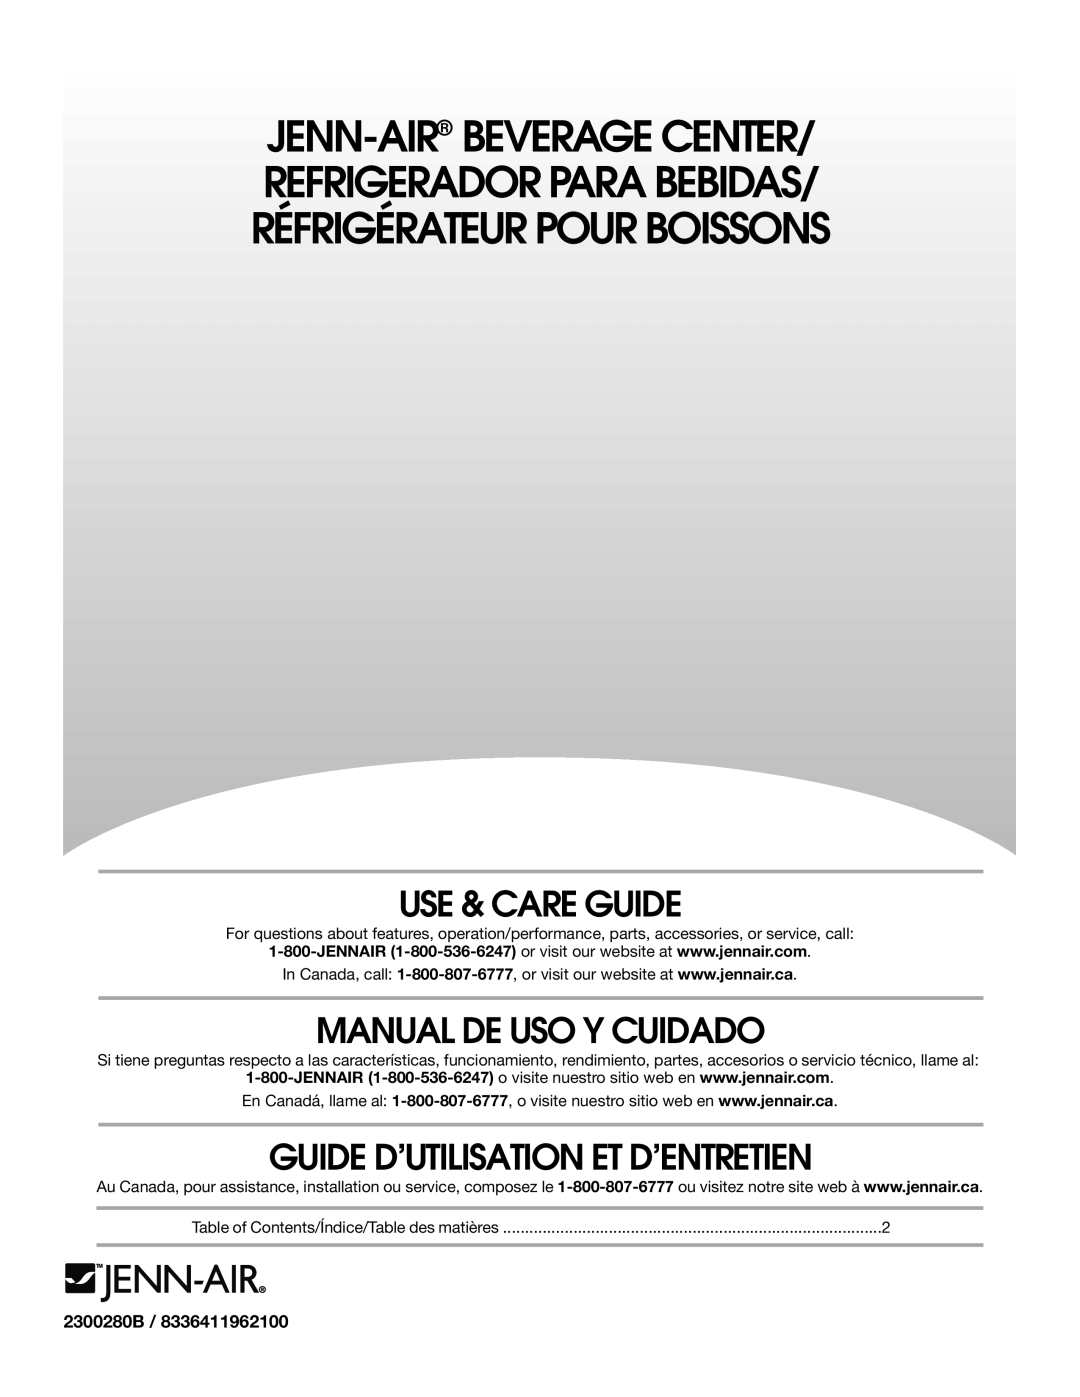 Jenn-Air 8.34E+12 manual Use & Care Guide, Manual De Uso Y Cuidado, Guide D’Utilisation Et D’Entretien, 2300280B 